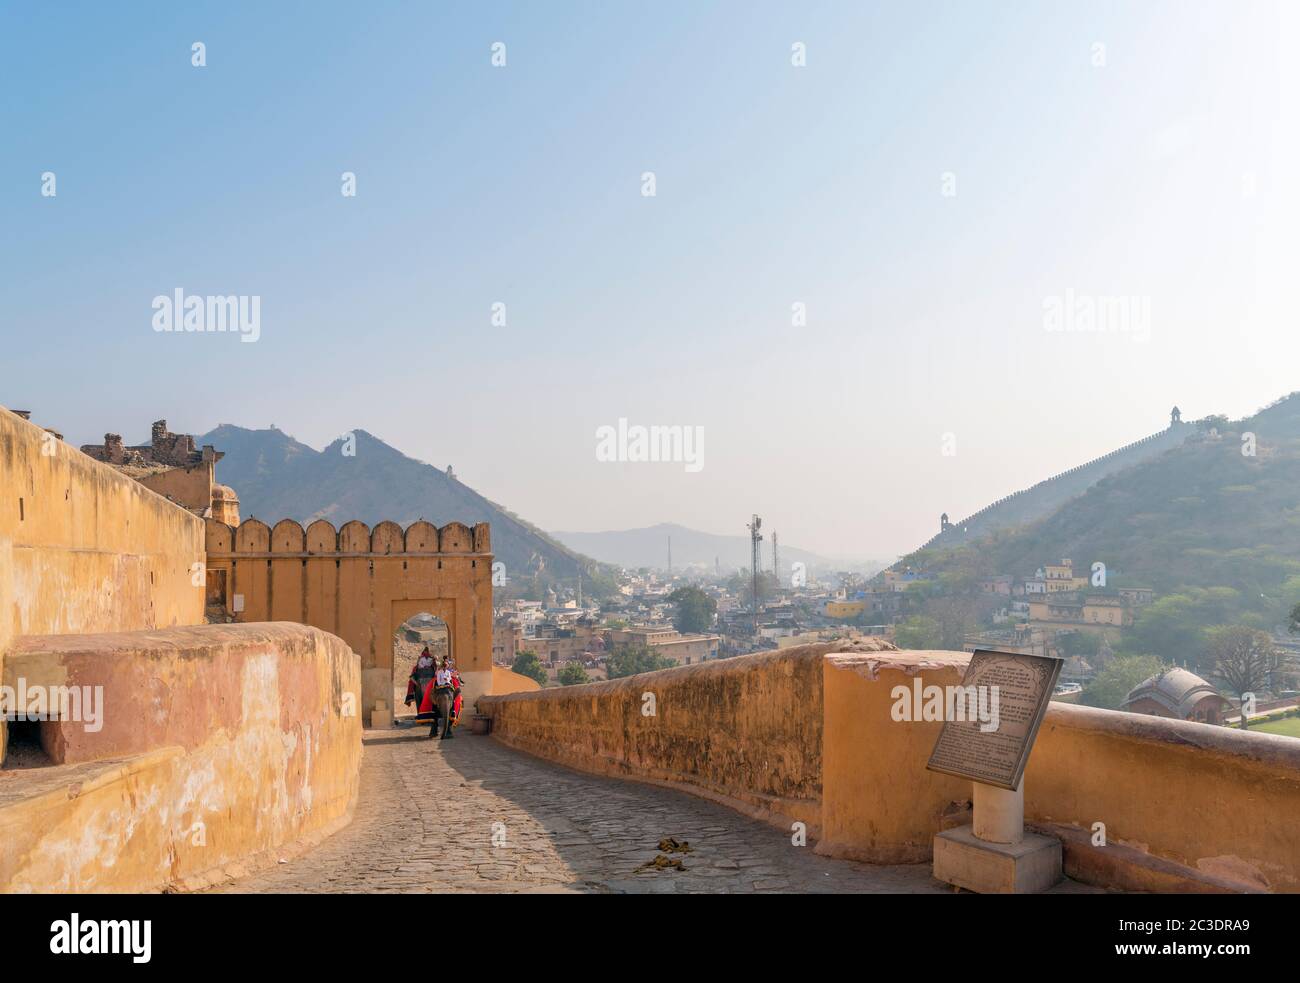 Chemin jusqu'au fort Amber (fort Amer), Jaipur, Rajasthan, Inde Banque D'Images